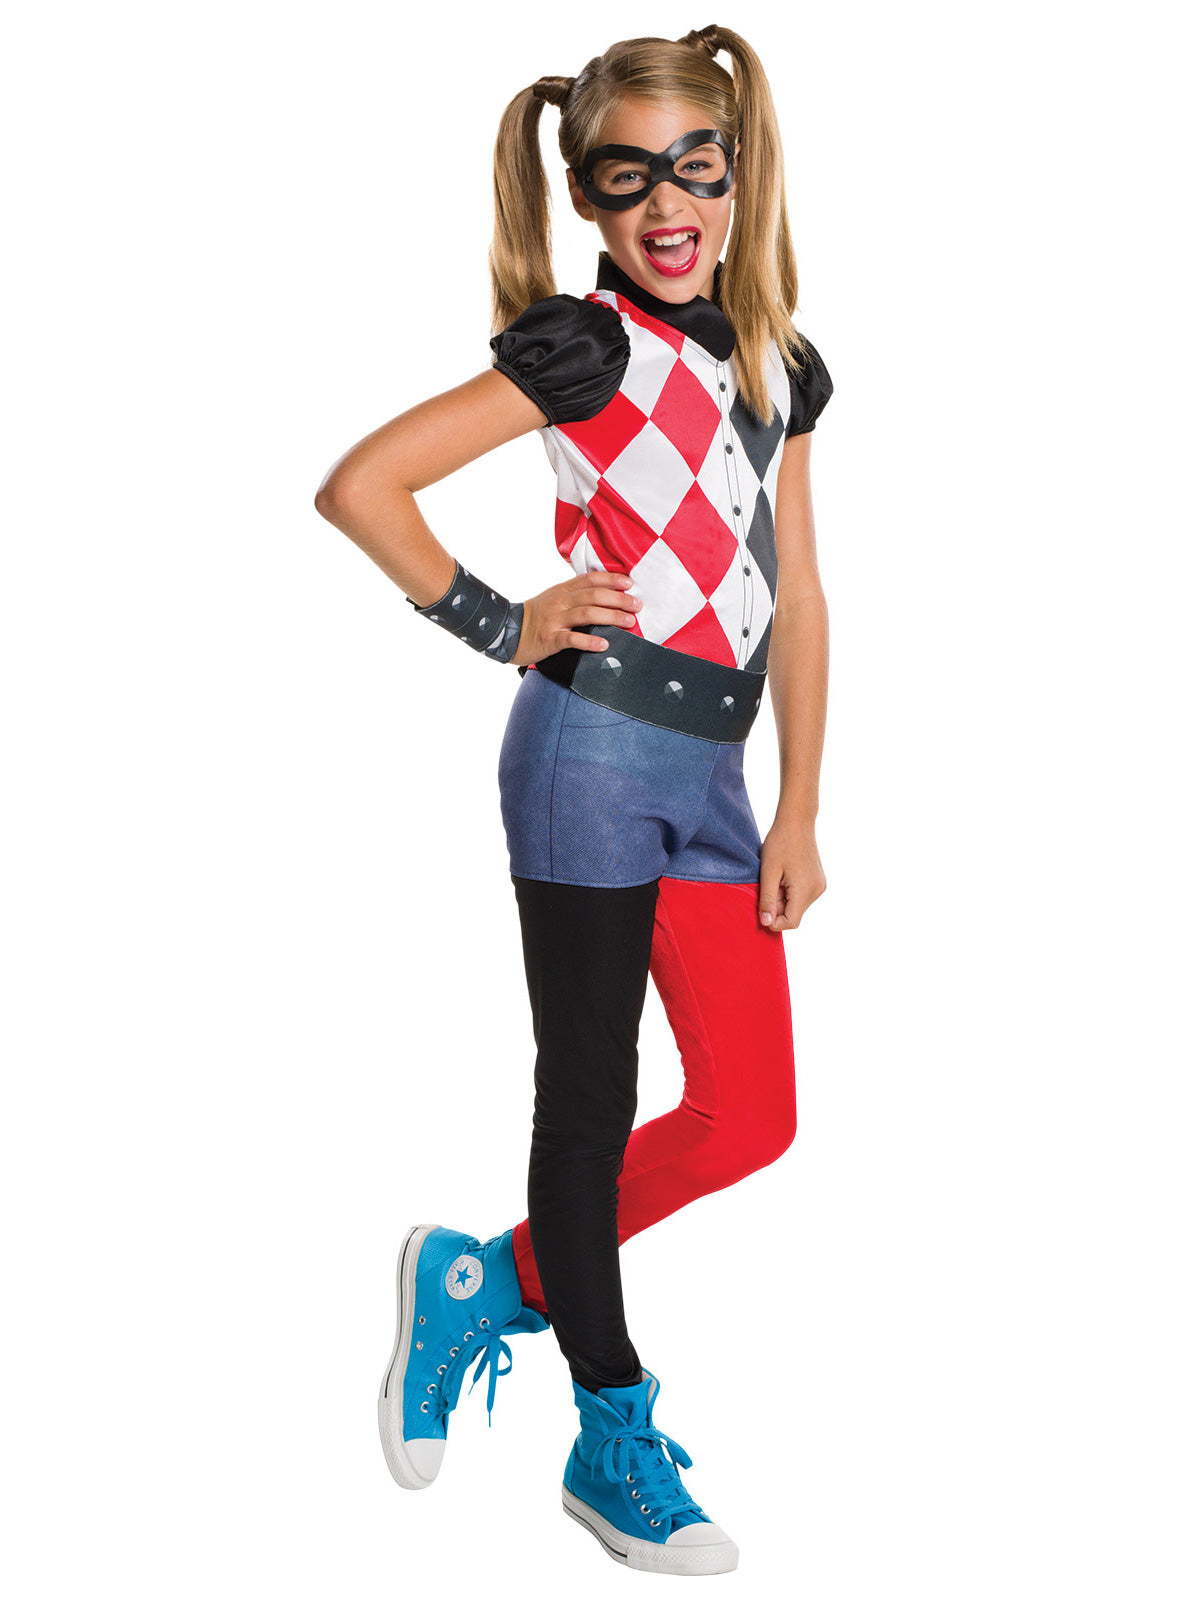 Harley Quinn DCSHG Claasic Girl's Child Costume, Licensed